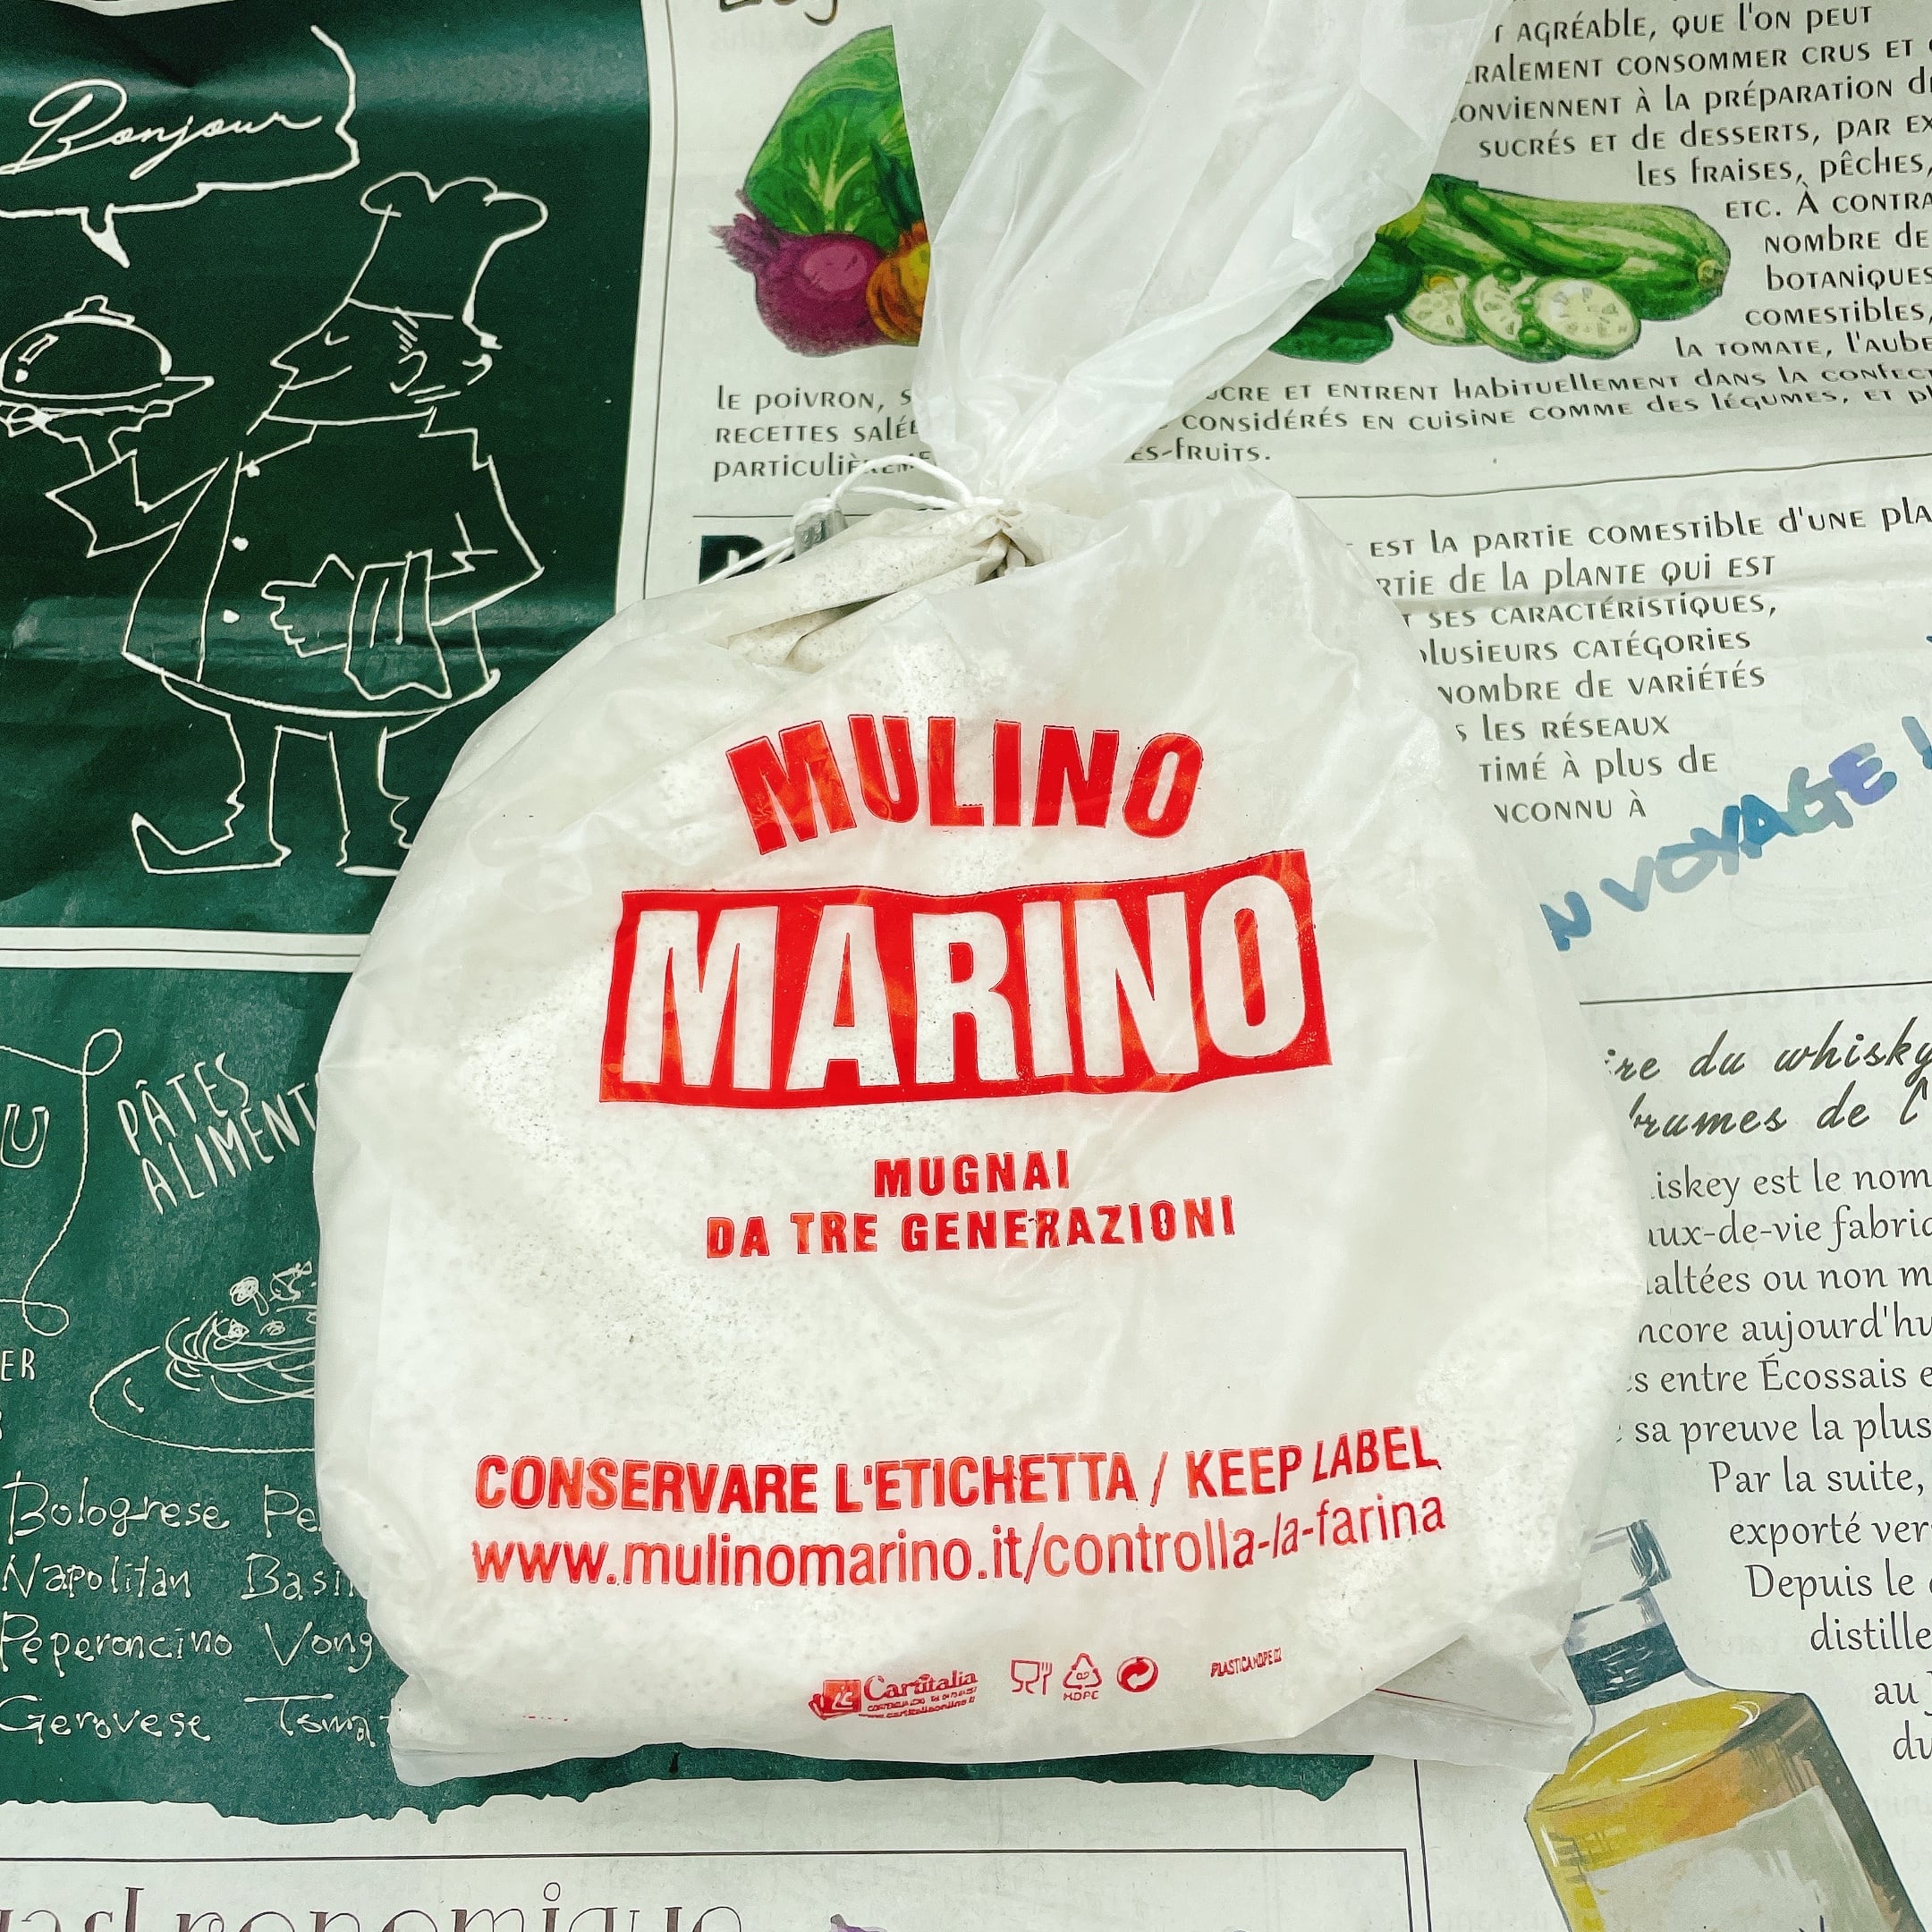 そば粉 (蕎麦粉) 500g 石臼挽き ムリーノ・マリーノ社 イタリア産 | 村上印オーガニック